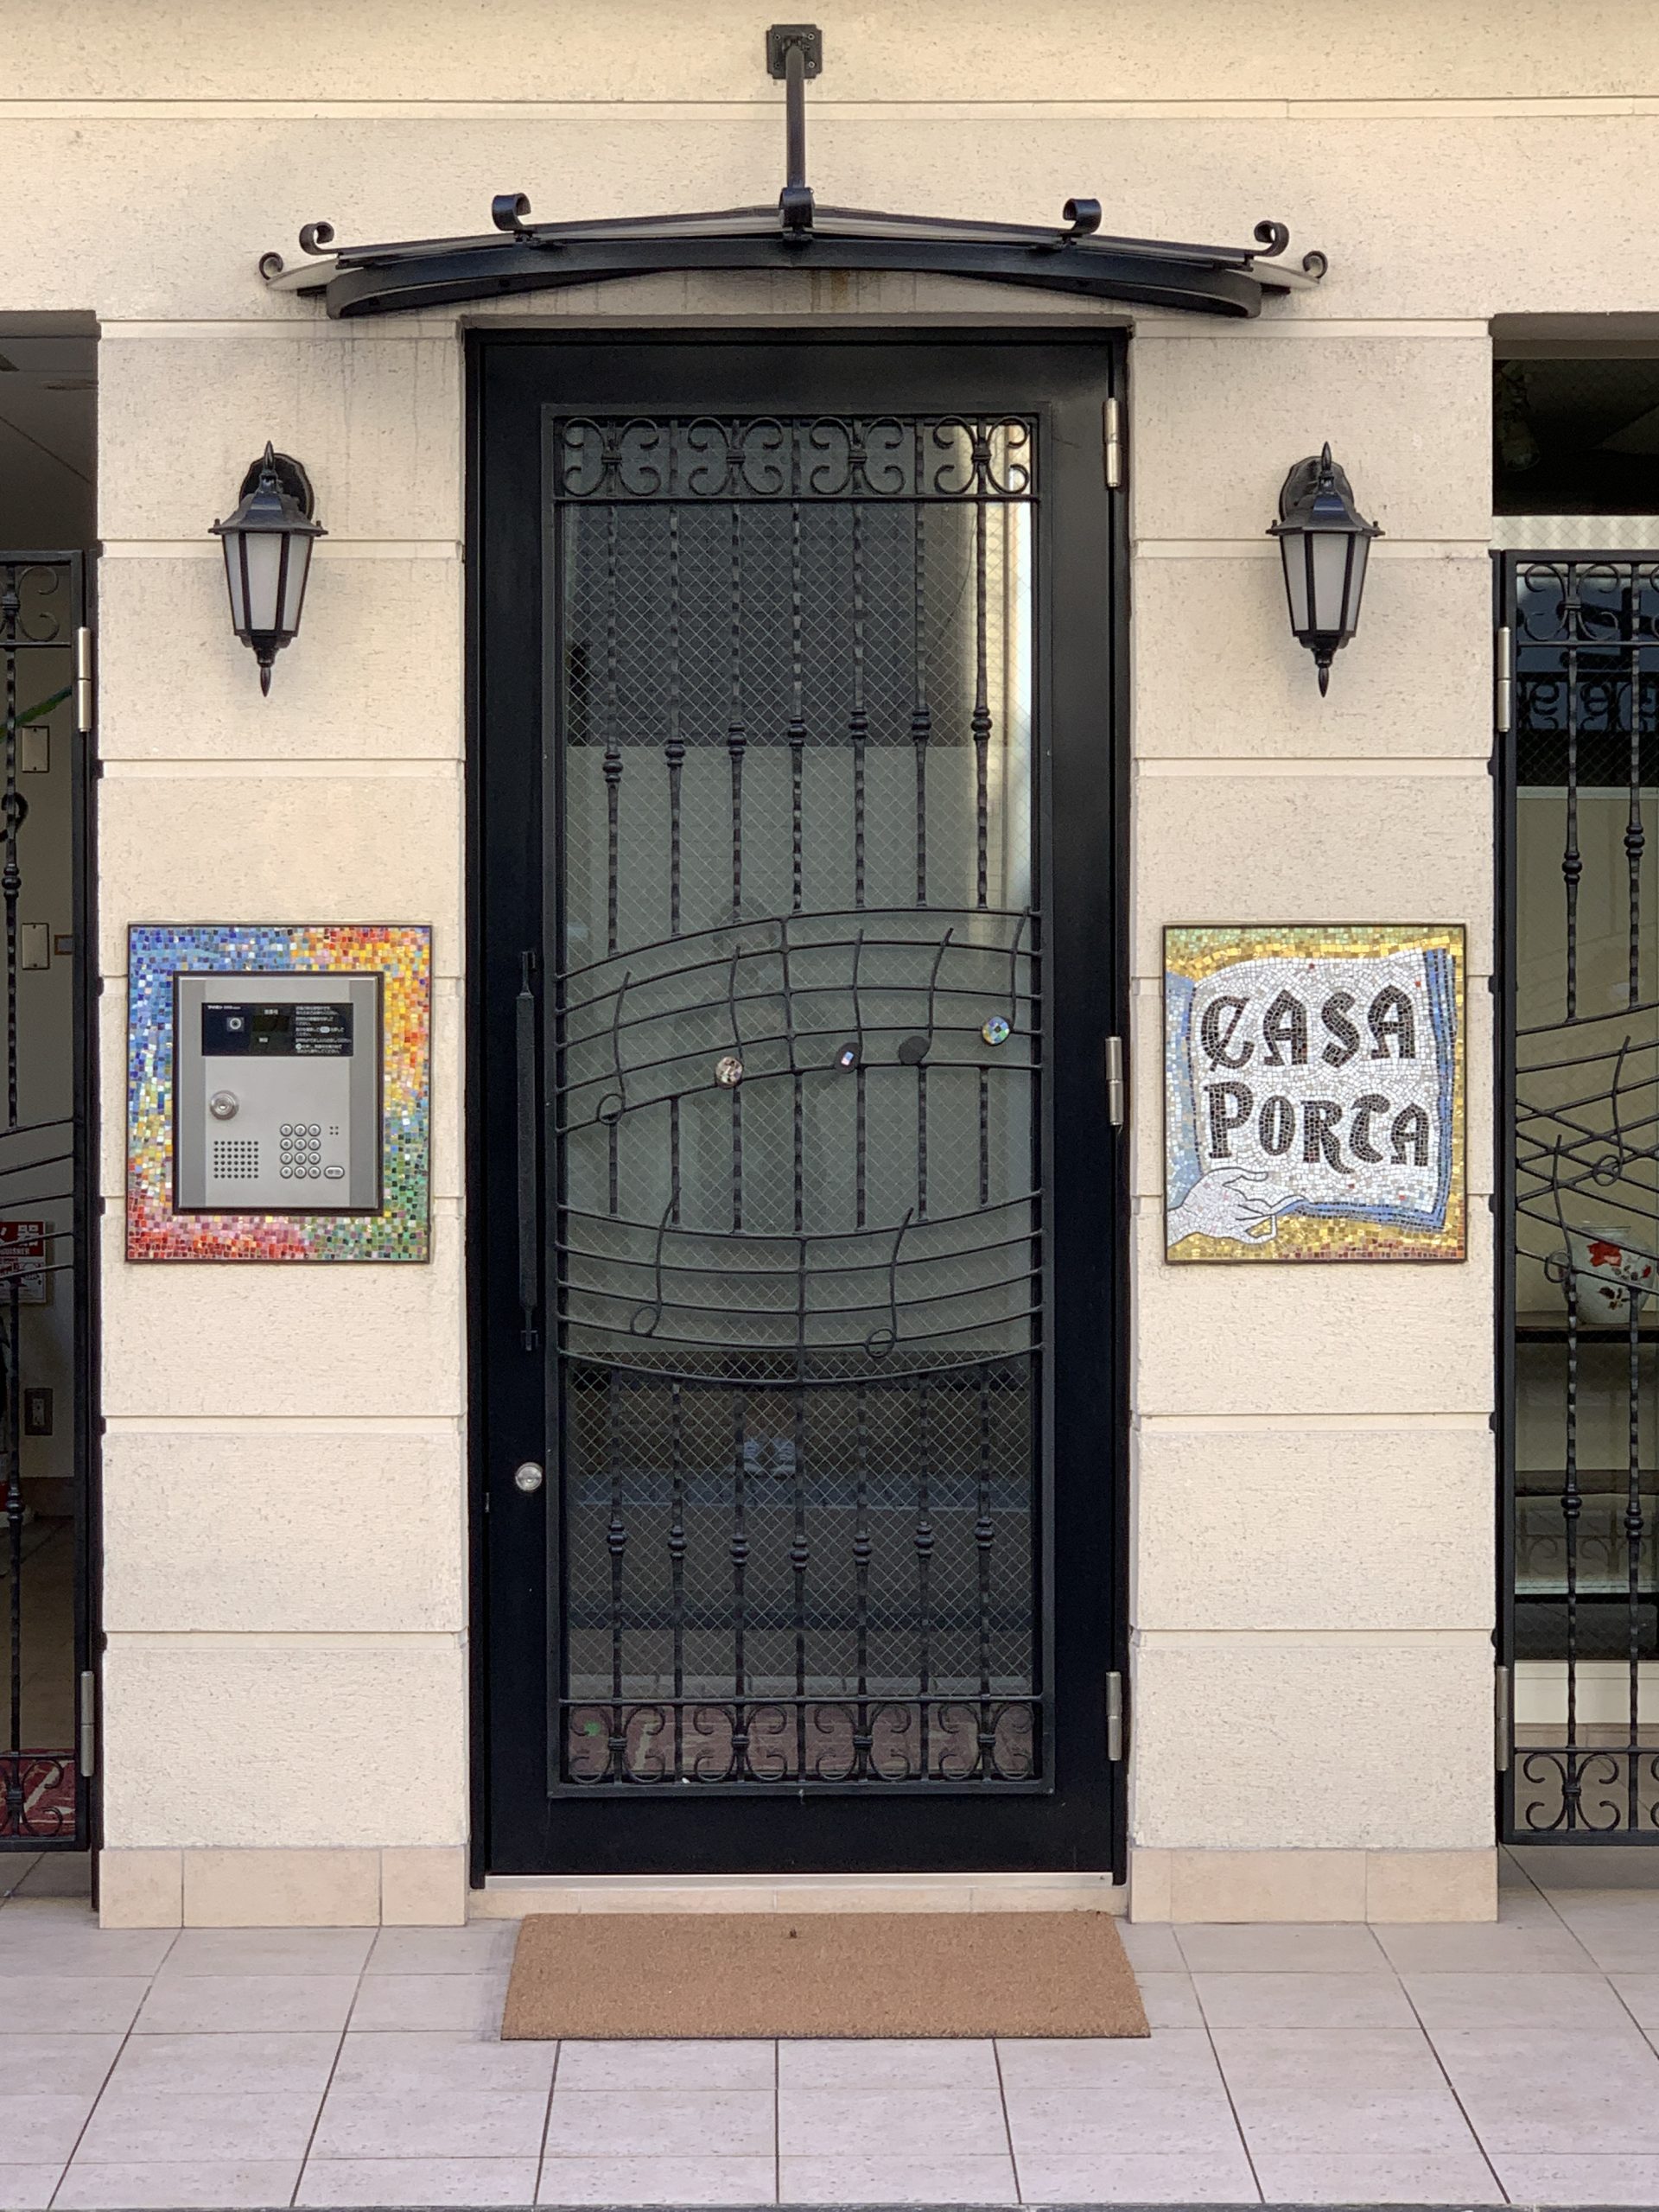 モザイクアート看板と対のインターホン装飾のある建物事例